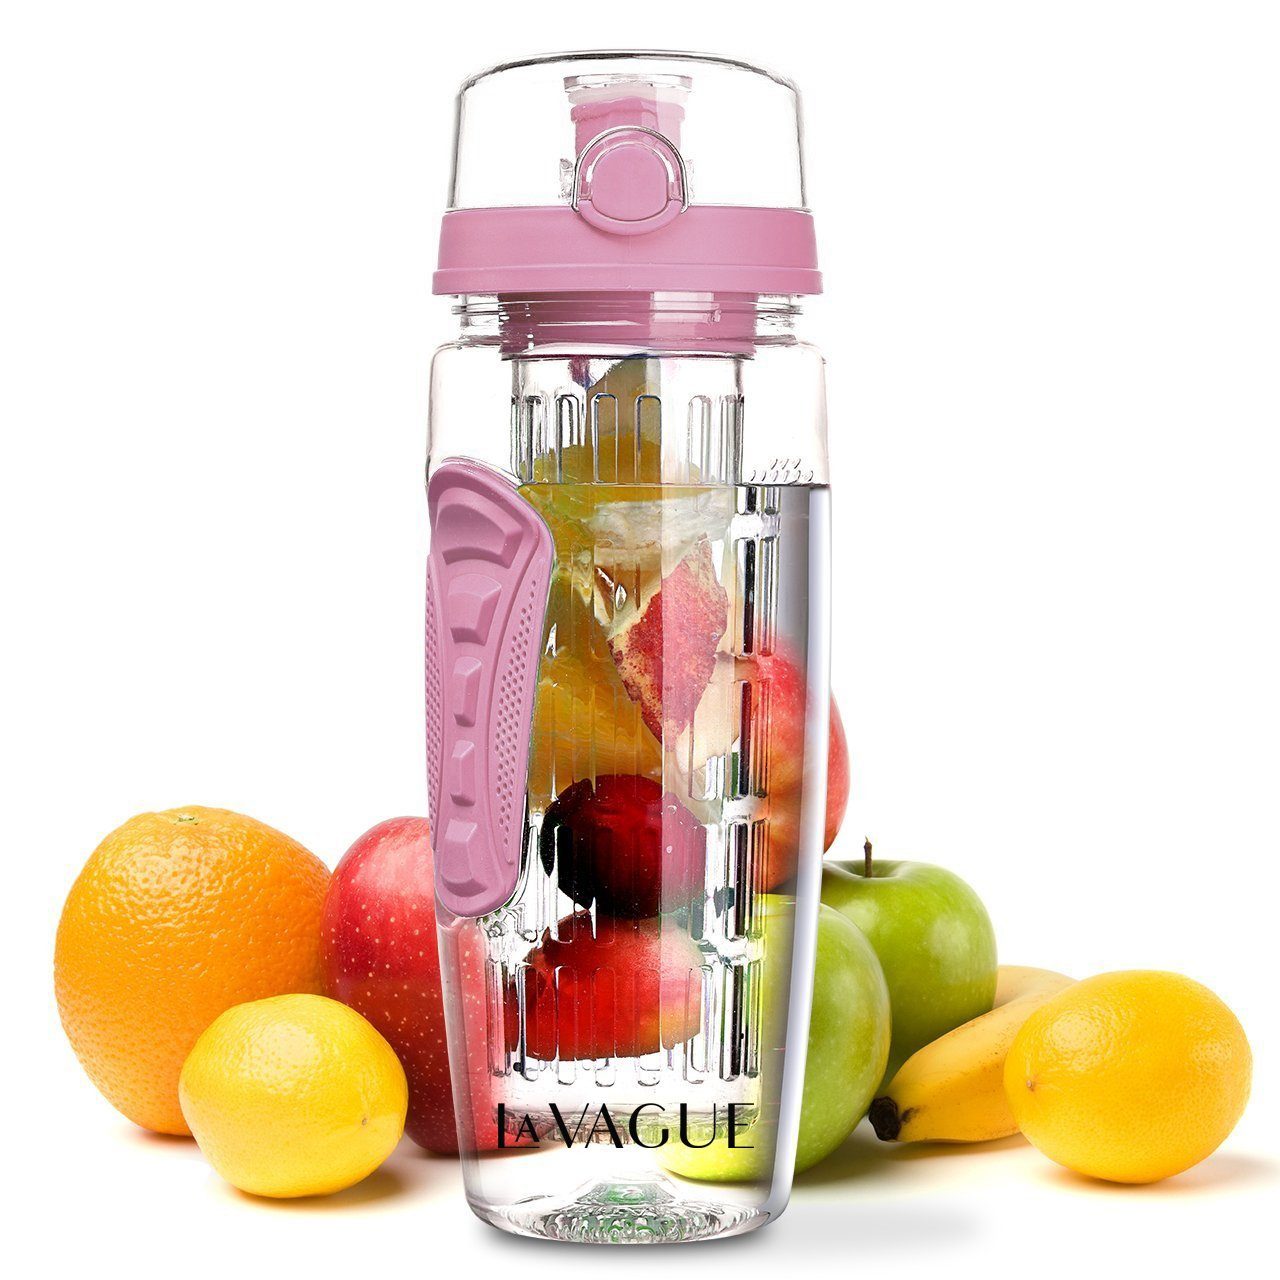 LA VAGUE Trinkflasche VITALITY trinkflasche mit einsatz, Trinkflasche mit Früchtesieb für perfekt aromatisierte Getränke rosa